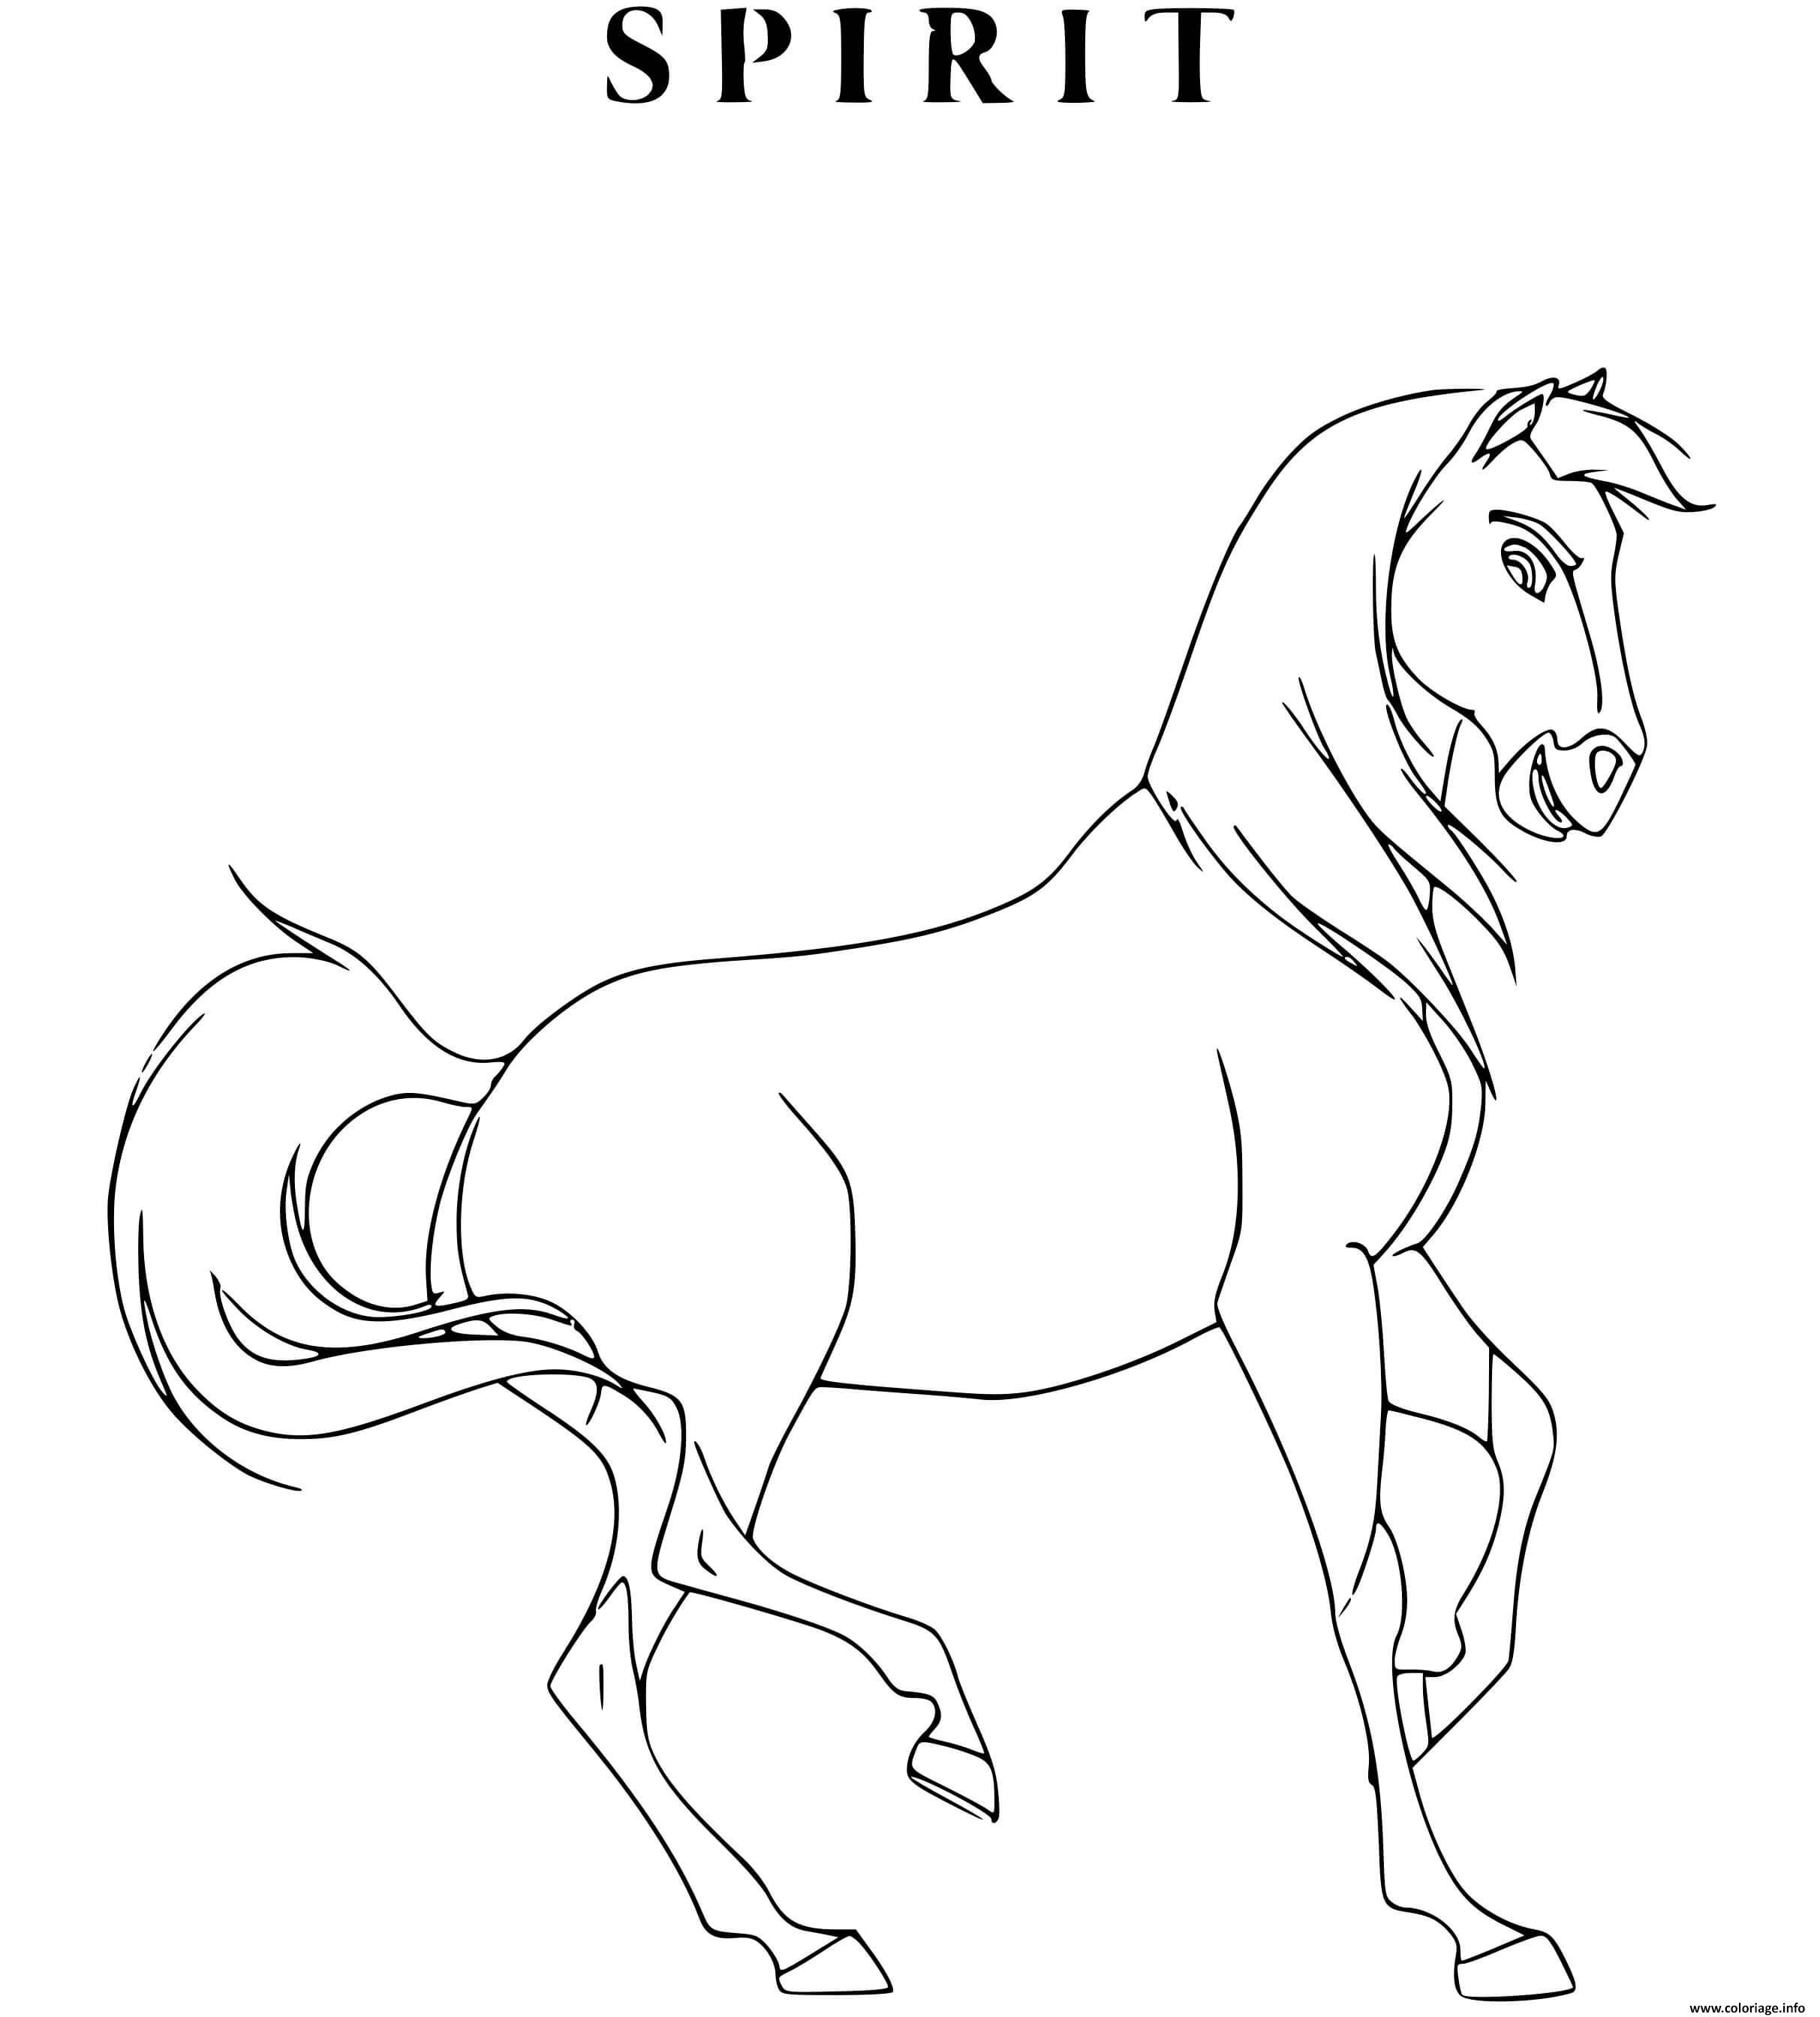 Раскраска Спирит. Онлайн игра про лошадей » Сайт о лошадях 4x4niva.ru